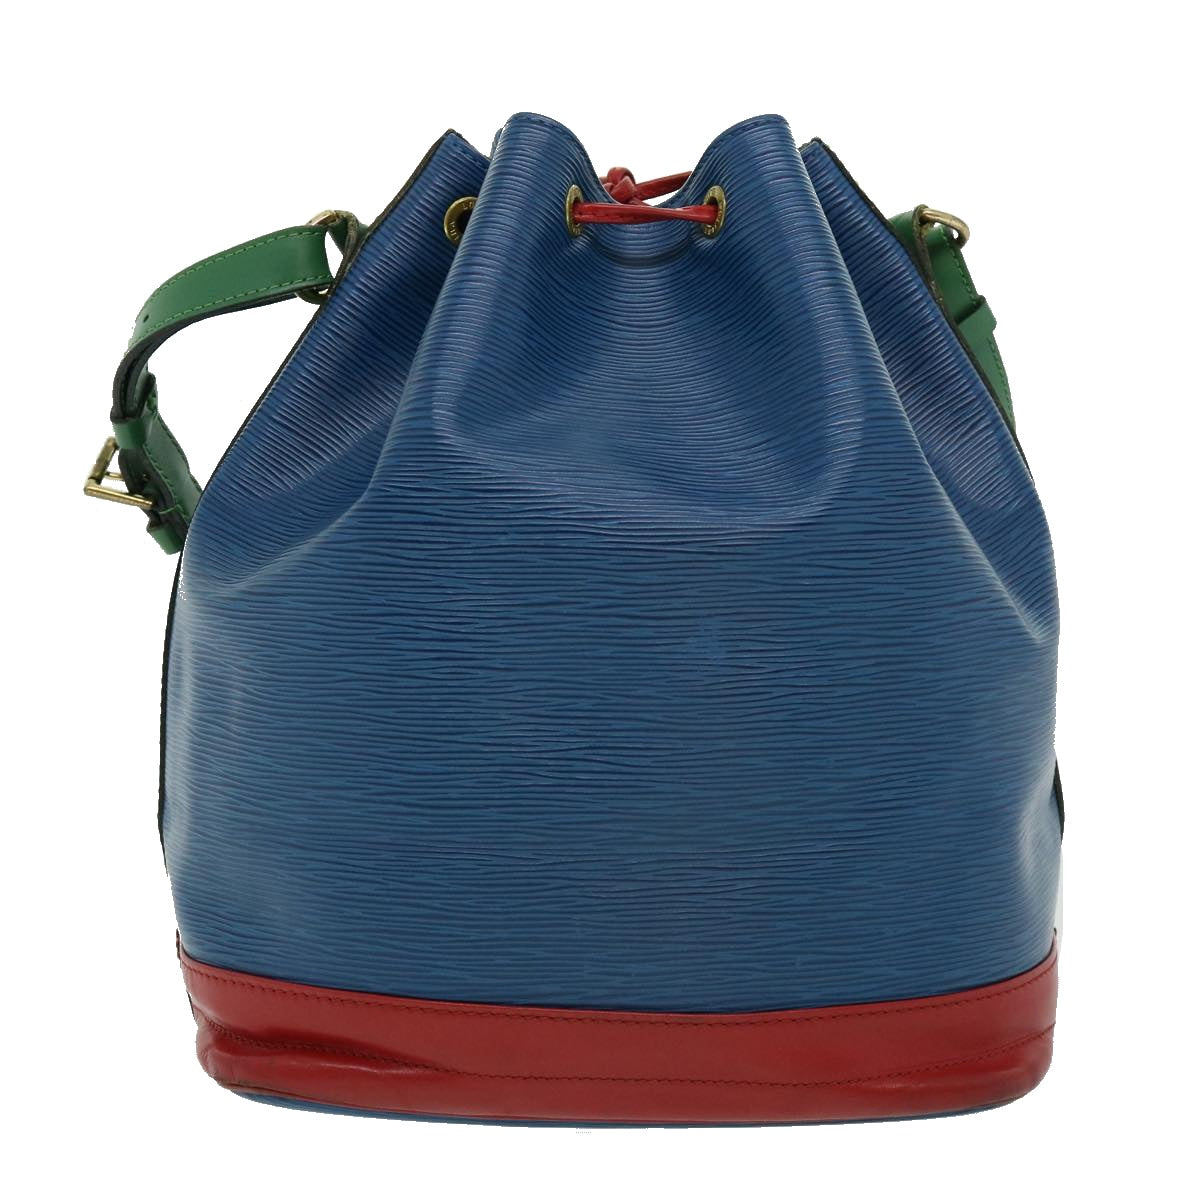 LOUIS VUITTON Epi Tricolor Noe Shoulder Bag Blue Red Green M44082 LV Auth hs1153 - 0